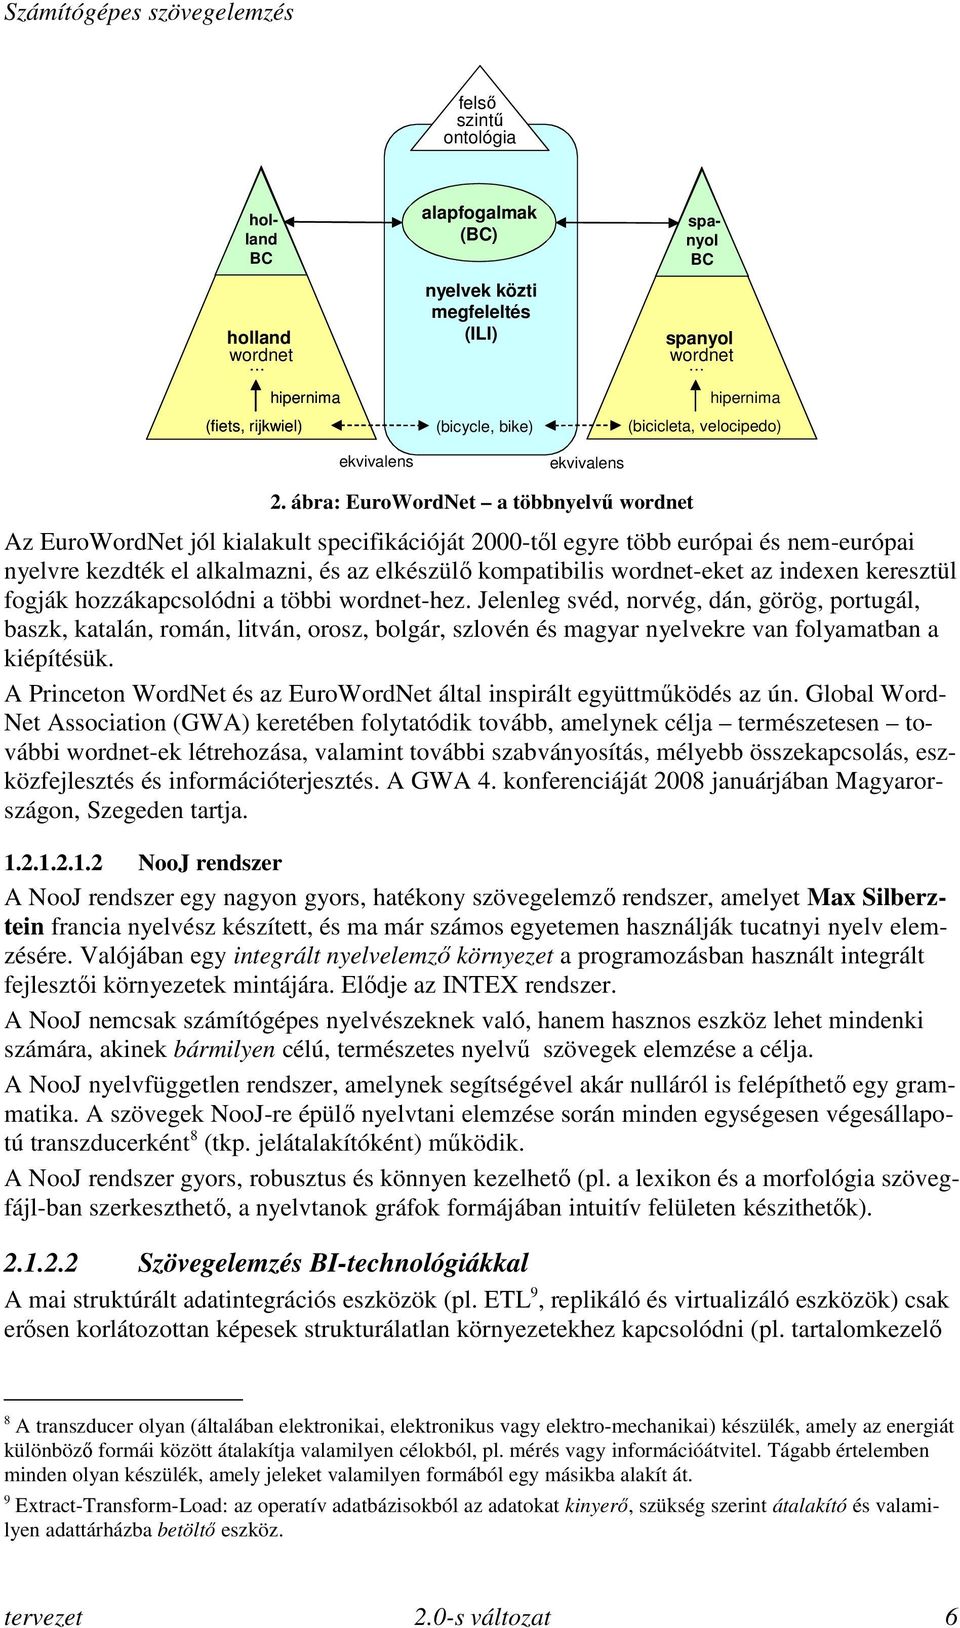 ábra: EuroWordNet a többnyelvű wordnet Az EuroWordNet jól kialakult specifikációját 2000-től egyre több európai és nem-európai nyelvre kezdték el alkalmazni, és az elkészülő kompatibilis wordnet-eket